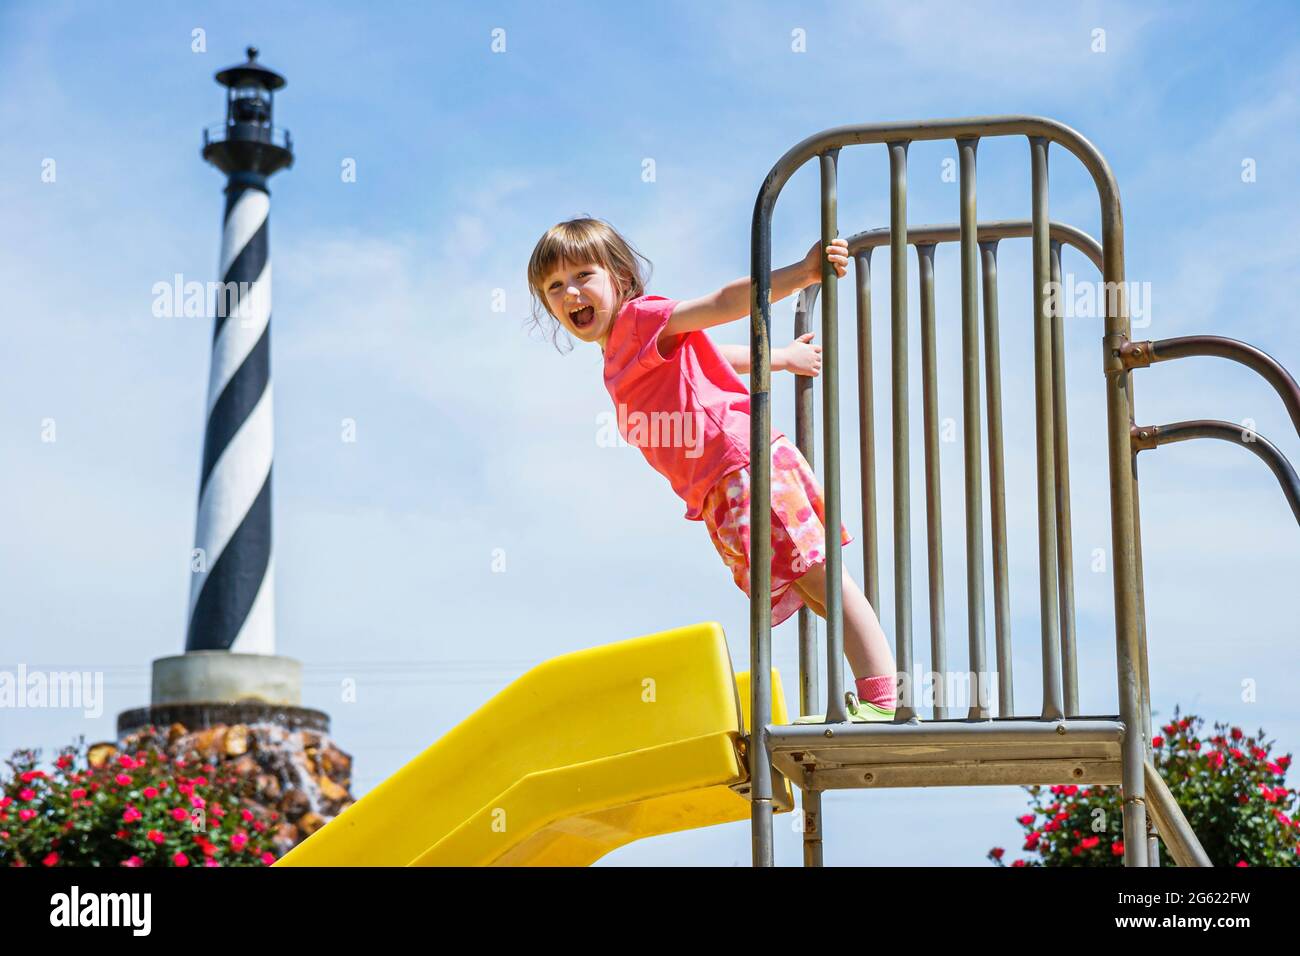 Alabama Clanton Peach Park Spielplatz Leuchtturm Mädchen Youngster Kind Spielplatz Rutsche, Stockfoto